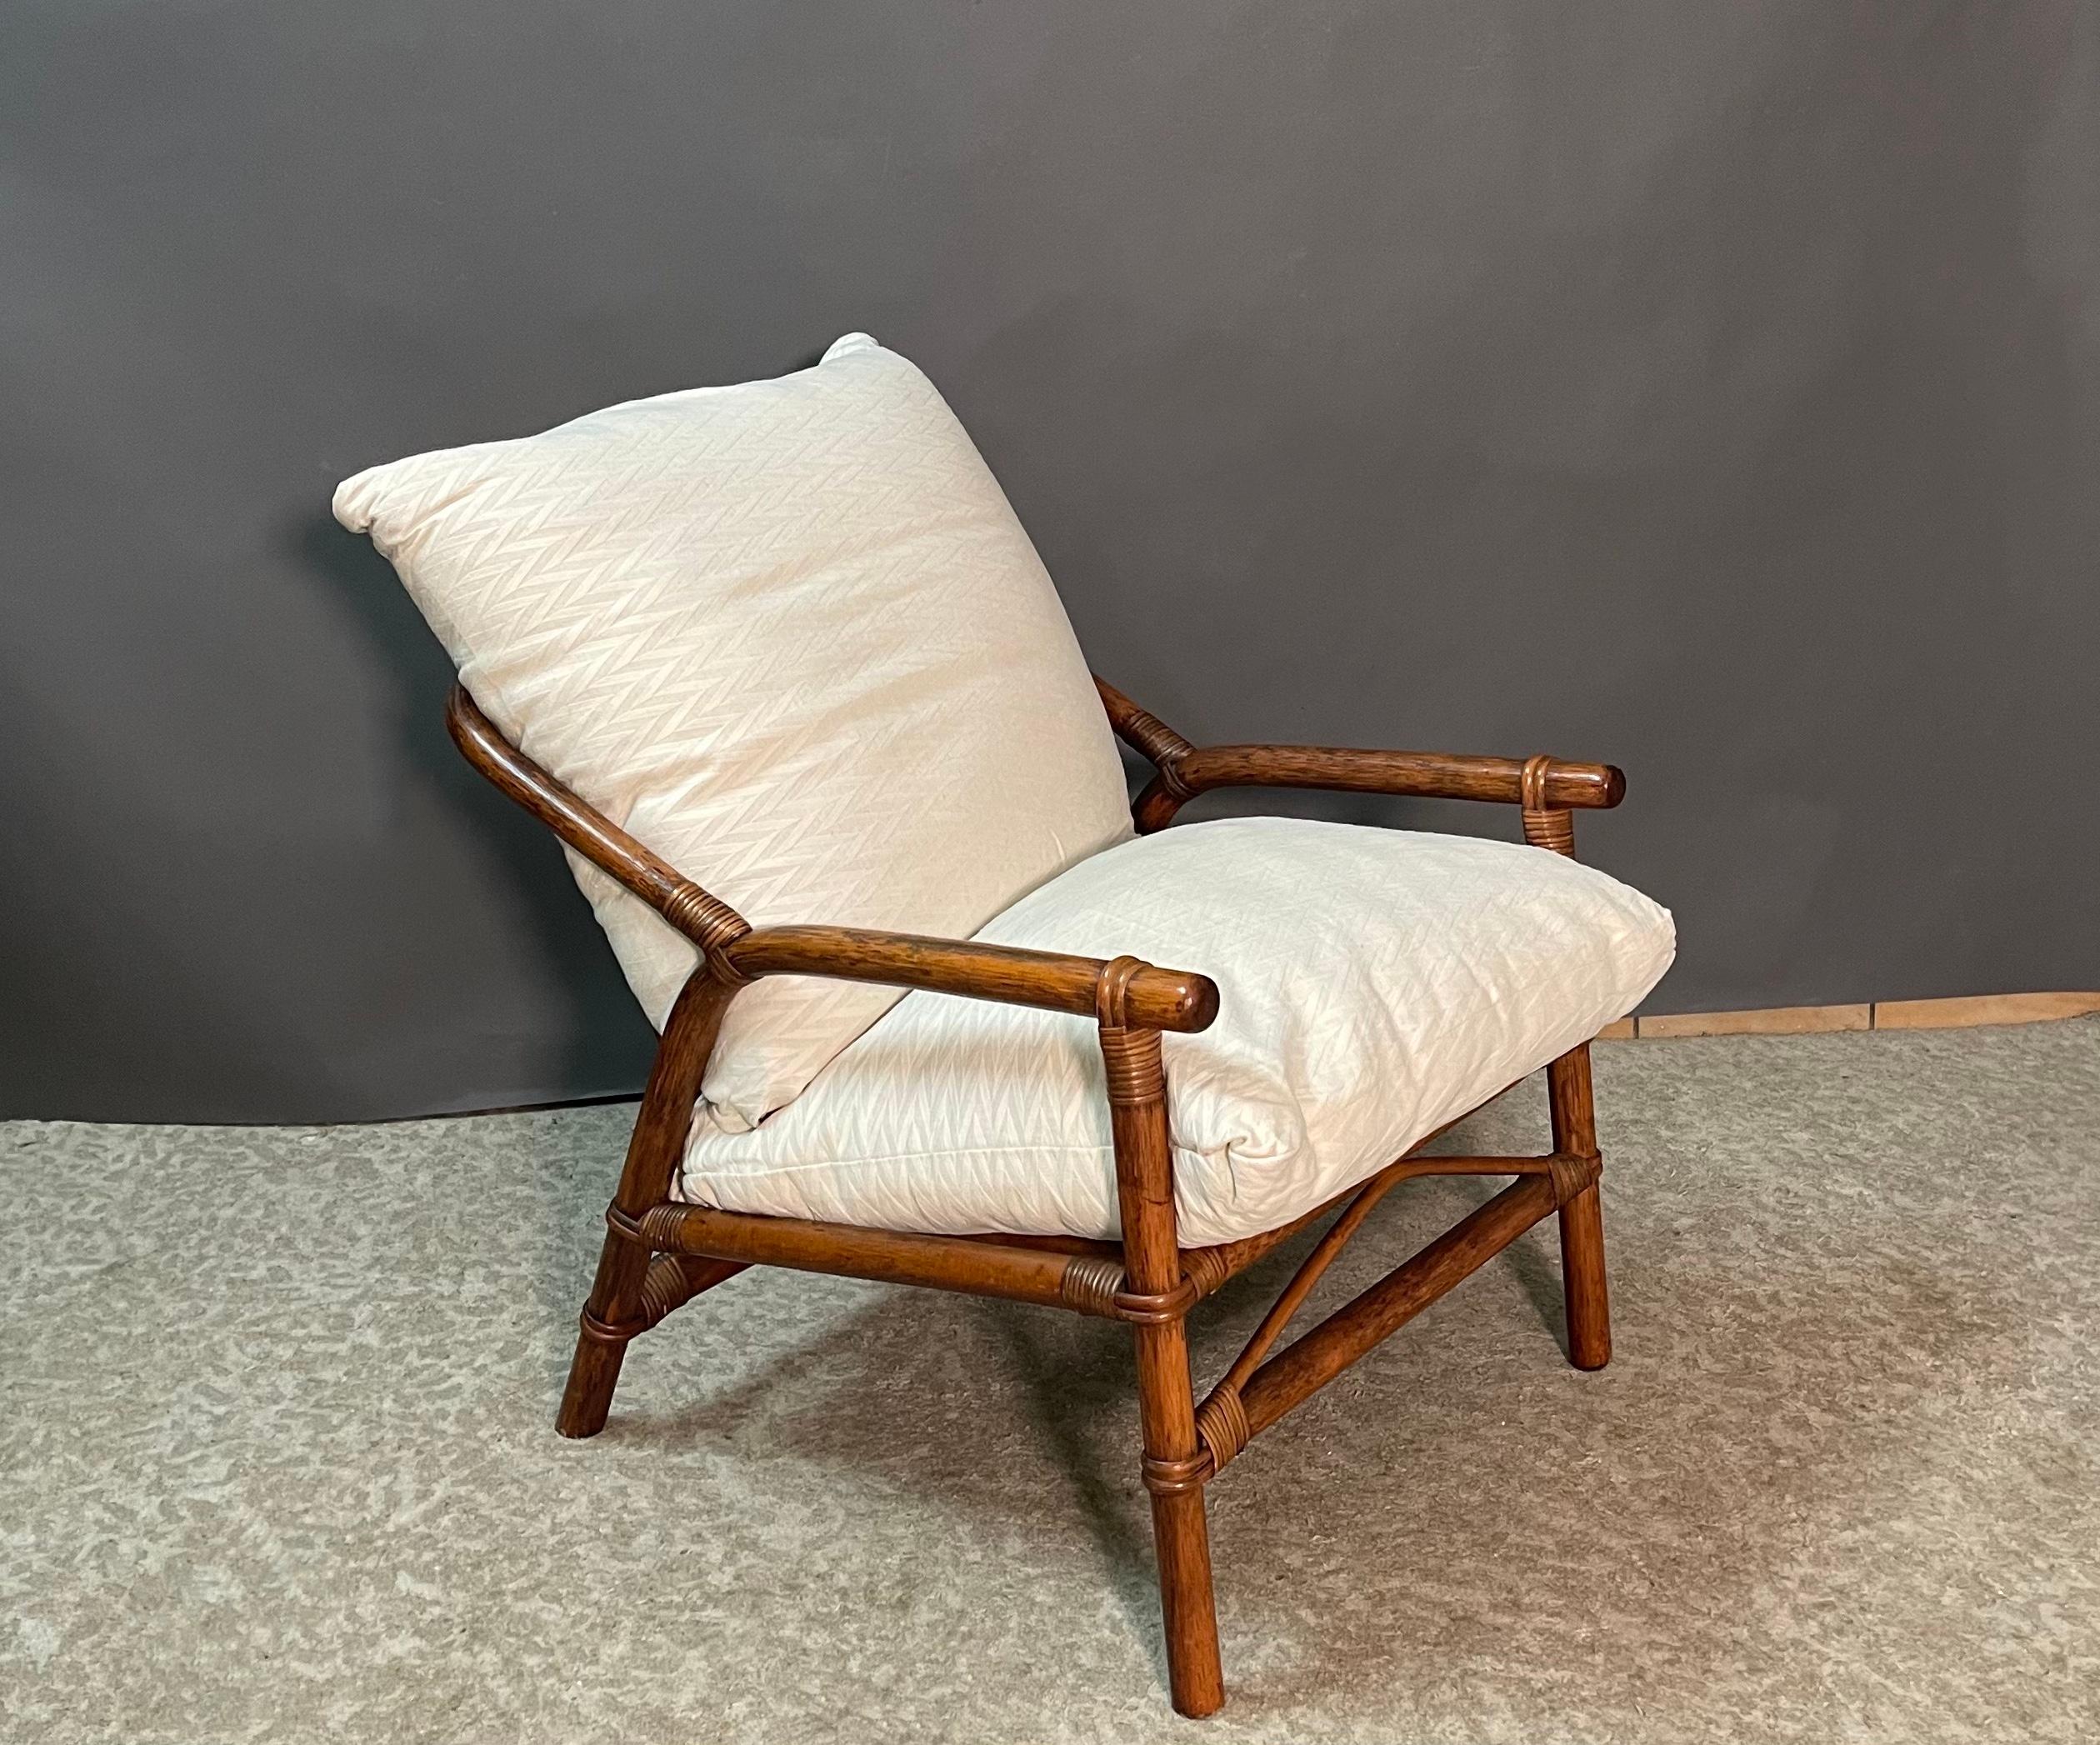 Belle paire de fauteuils de style colonial italien à structure en faux bambou tressé avec du rotin.
Le style des bras se fond sinueusement dans le dossier arrondi des chaises. 
Une paire de chaises longues très confortables datant des années